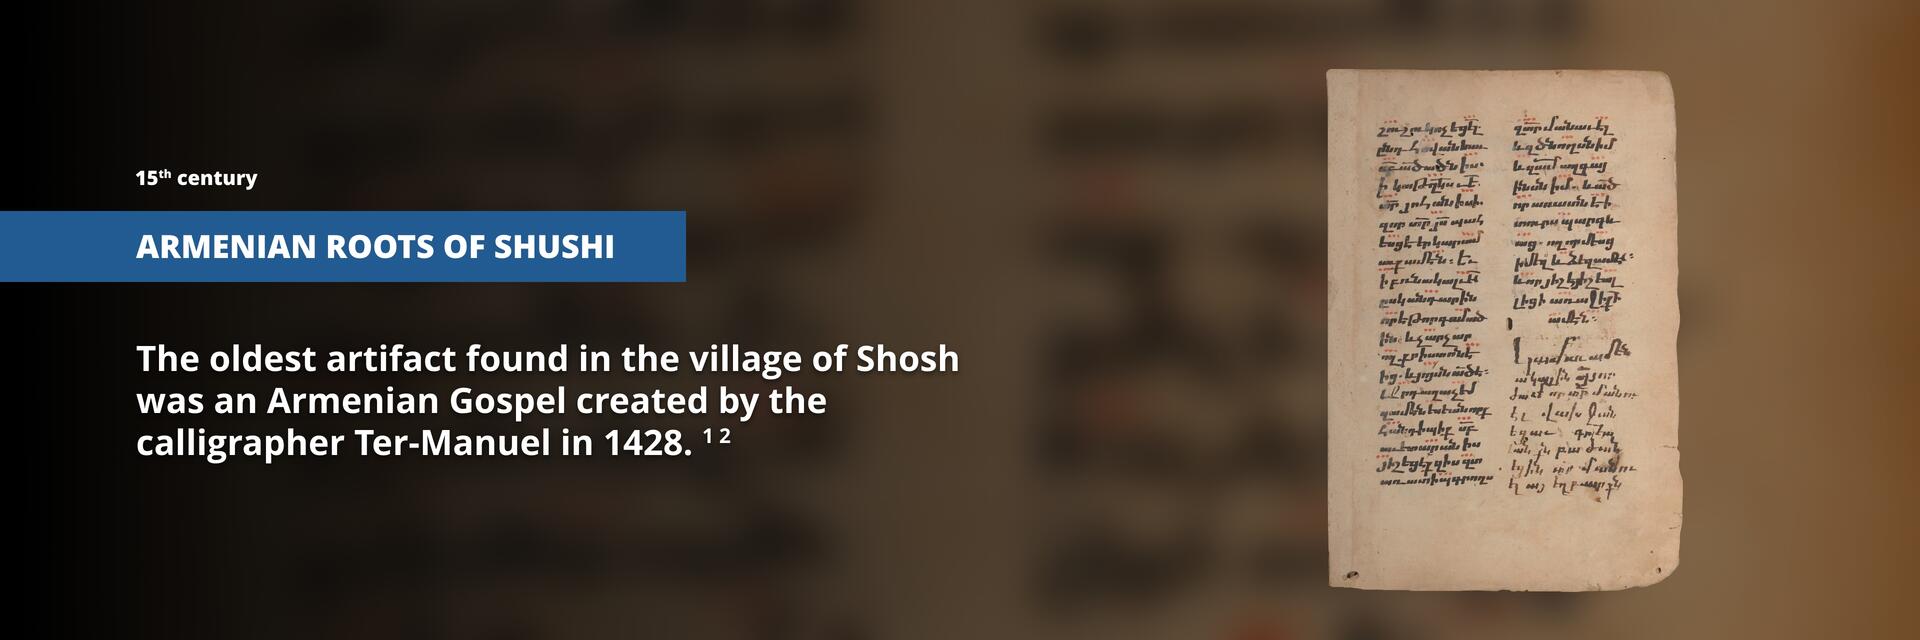 Armenian roots of Shushi